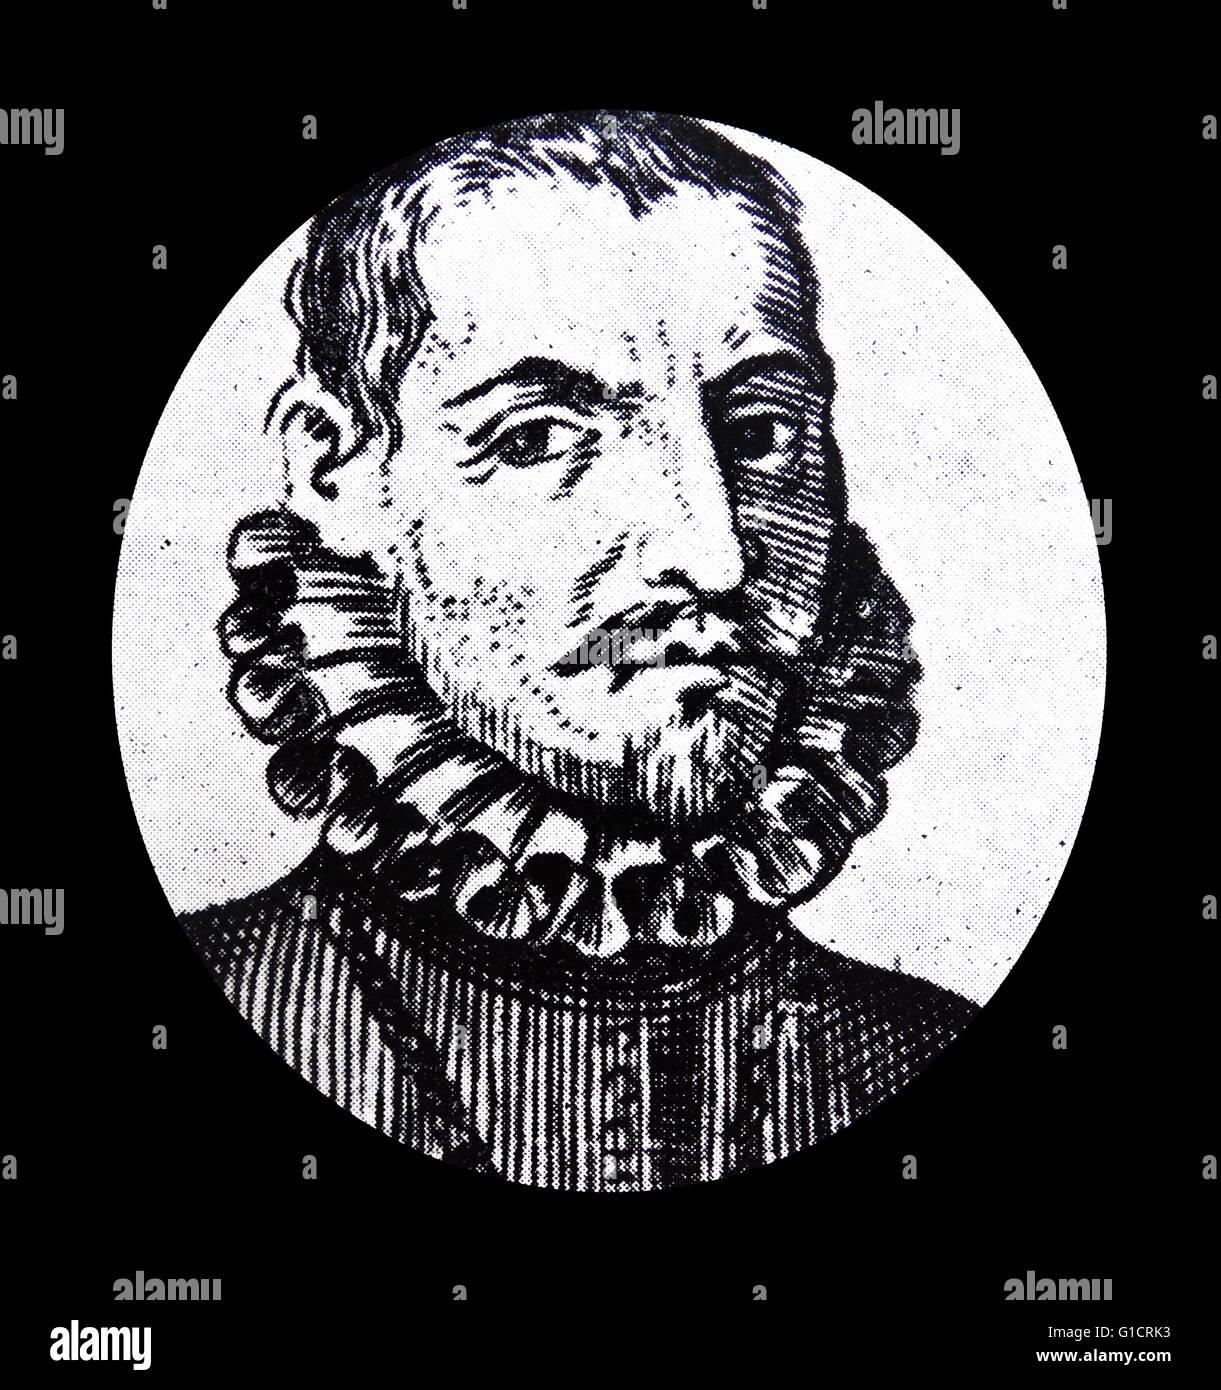 Antonio de Herrera y Tordesillas (1549 – 1626). Chronist; Historiker; und Schriftsteller des spanischen goldenen Zeitalters schrieb über die spanische Eroberung Amerikas. Stockfoto